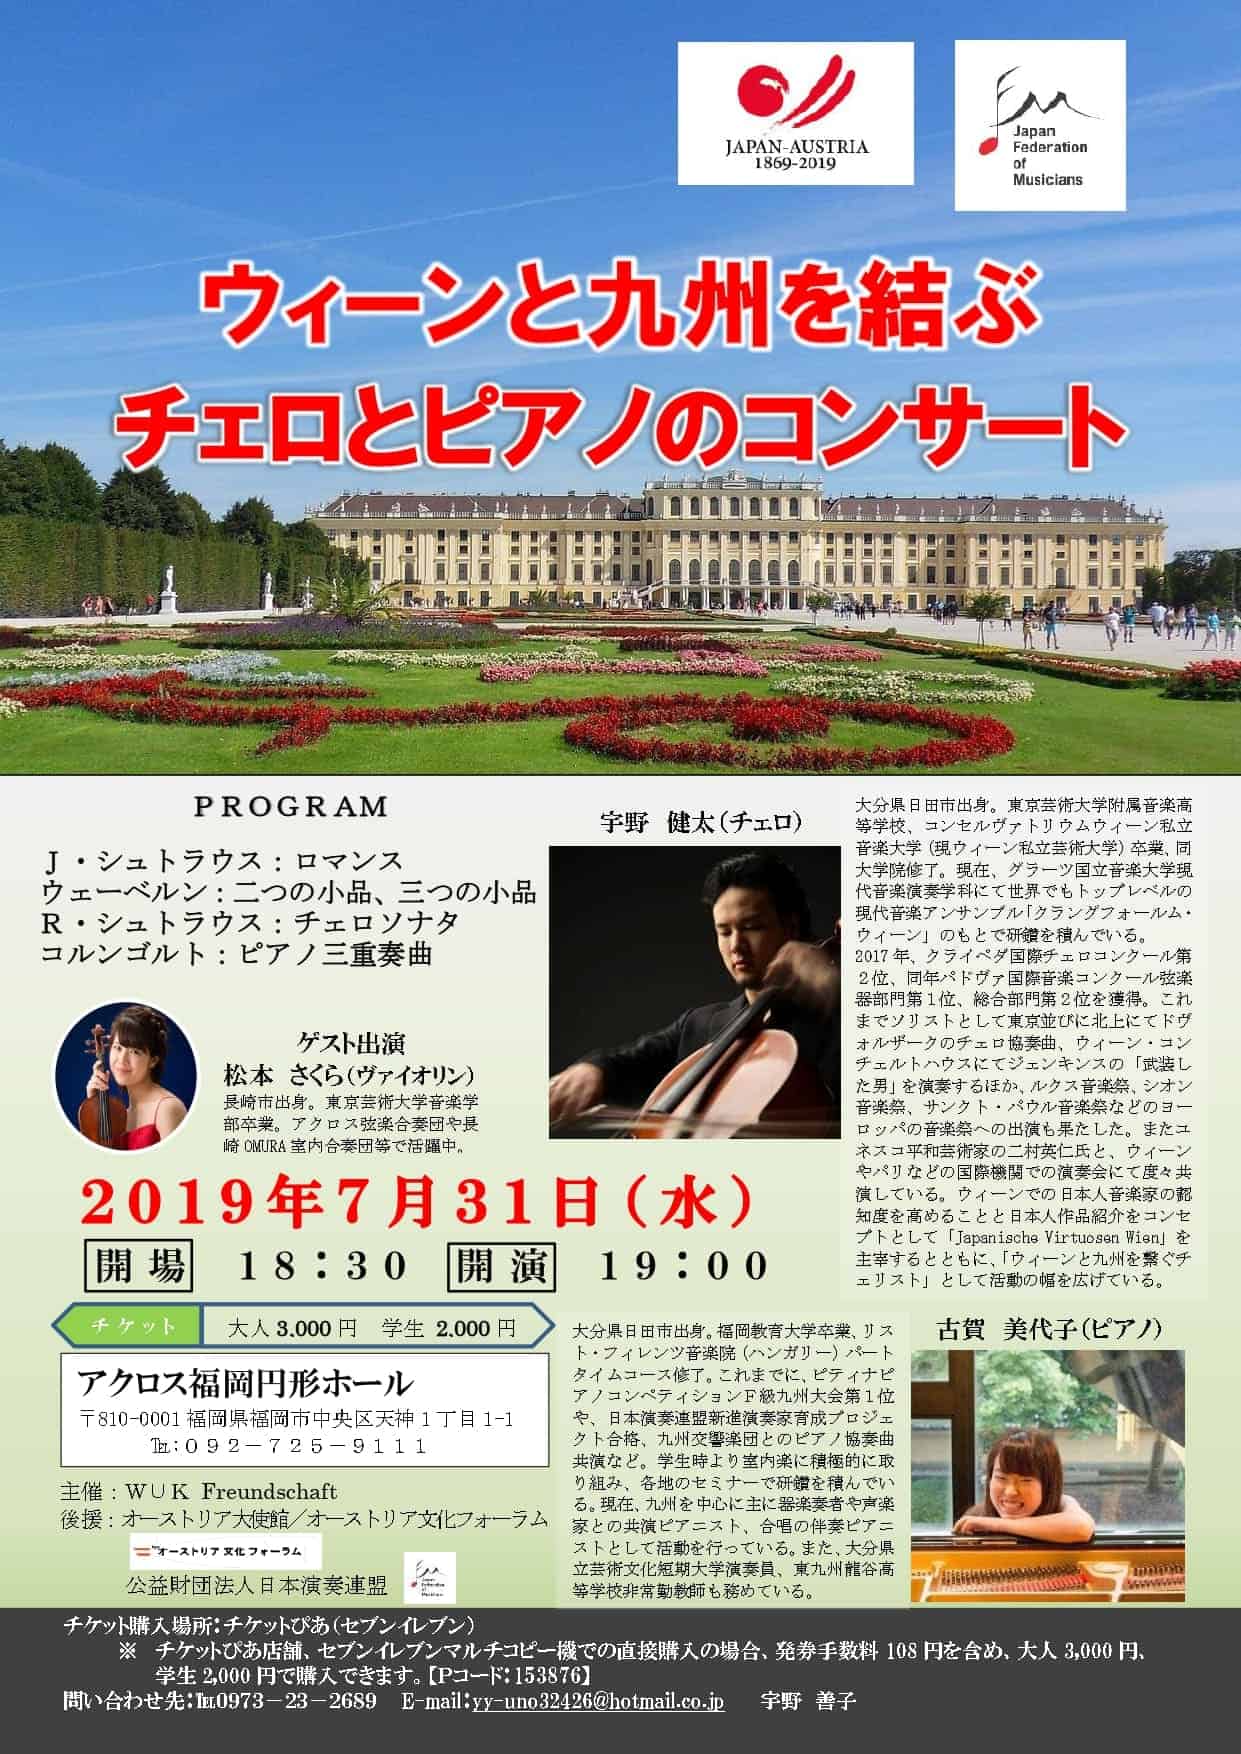 ウィーンと九州を結ぶチェロとピアノのコンサート